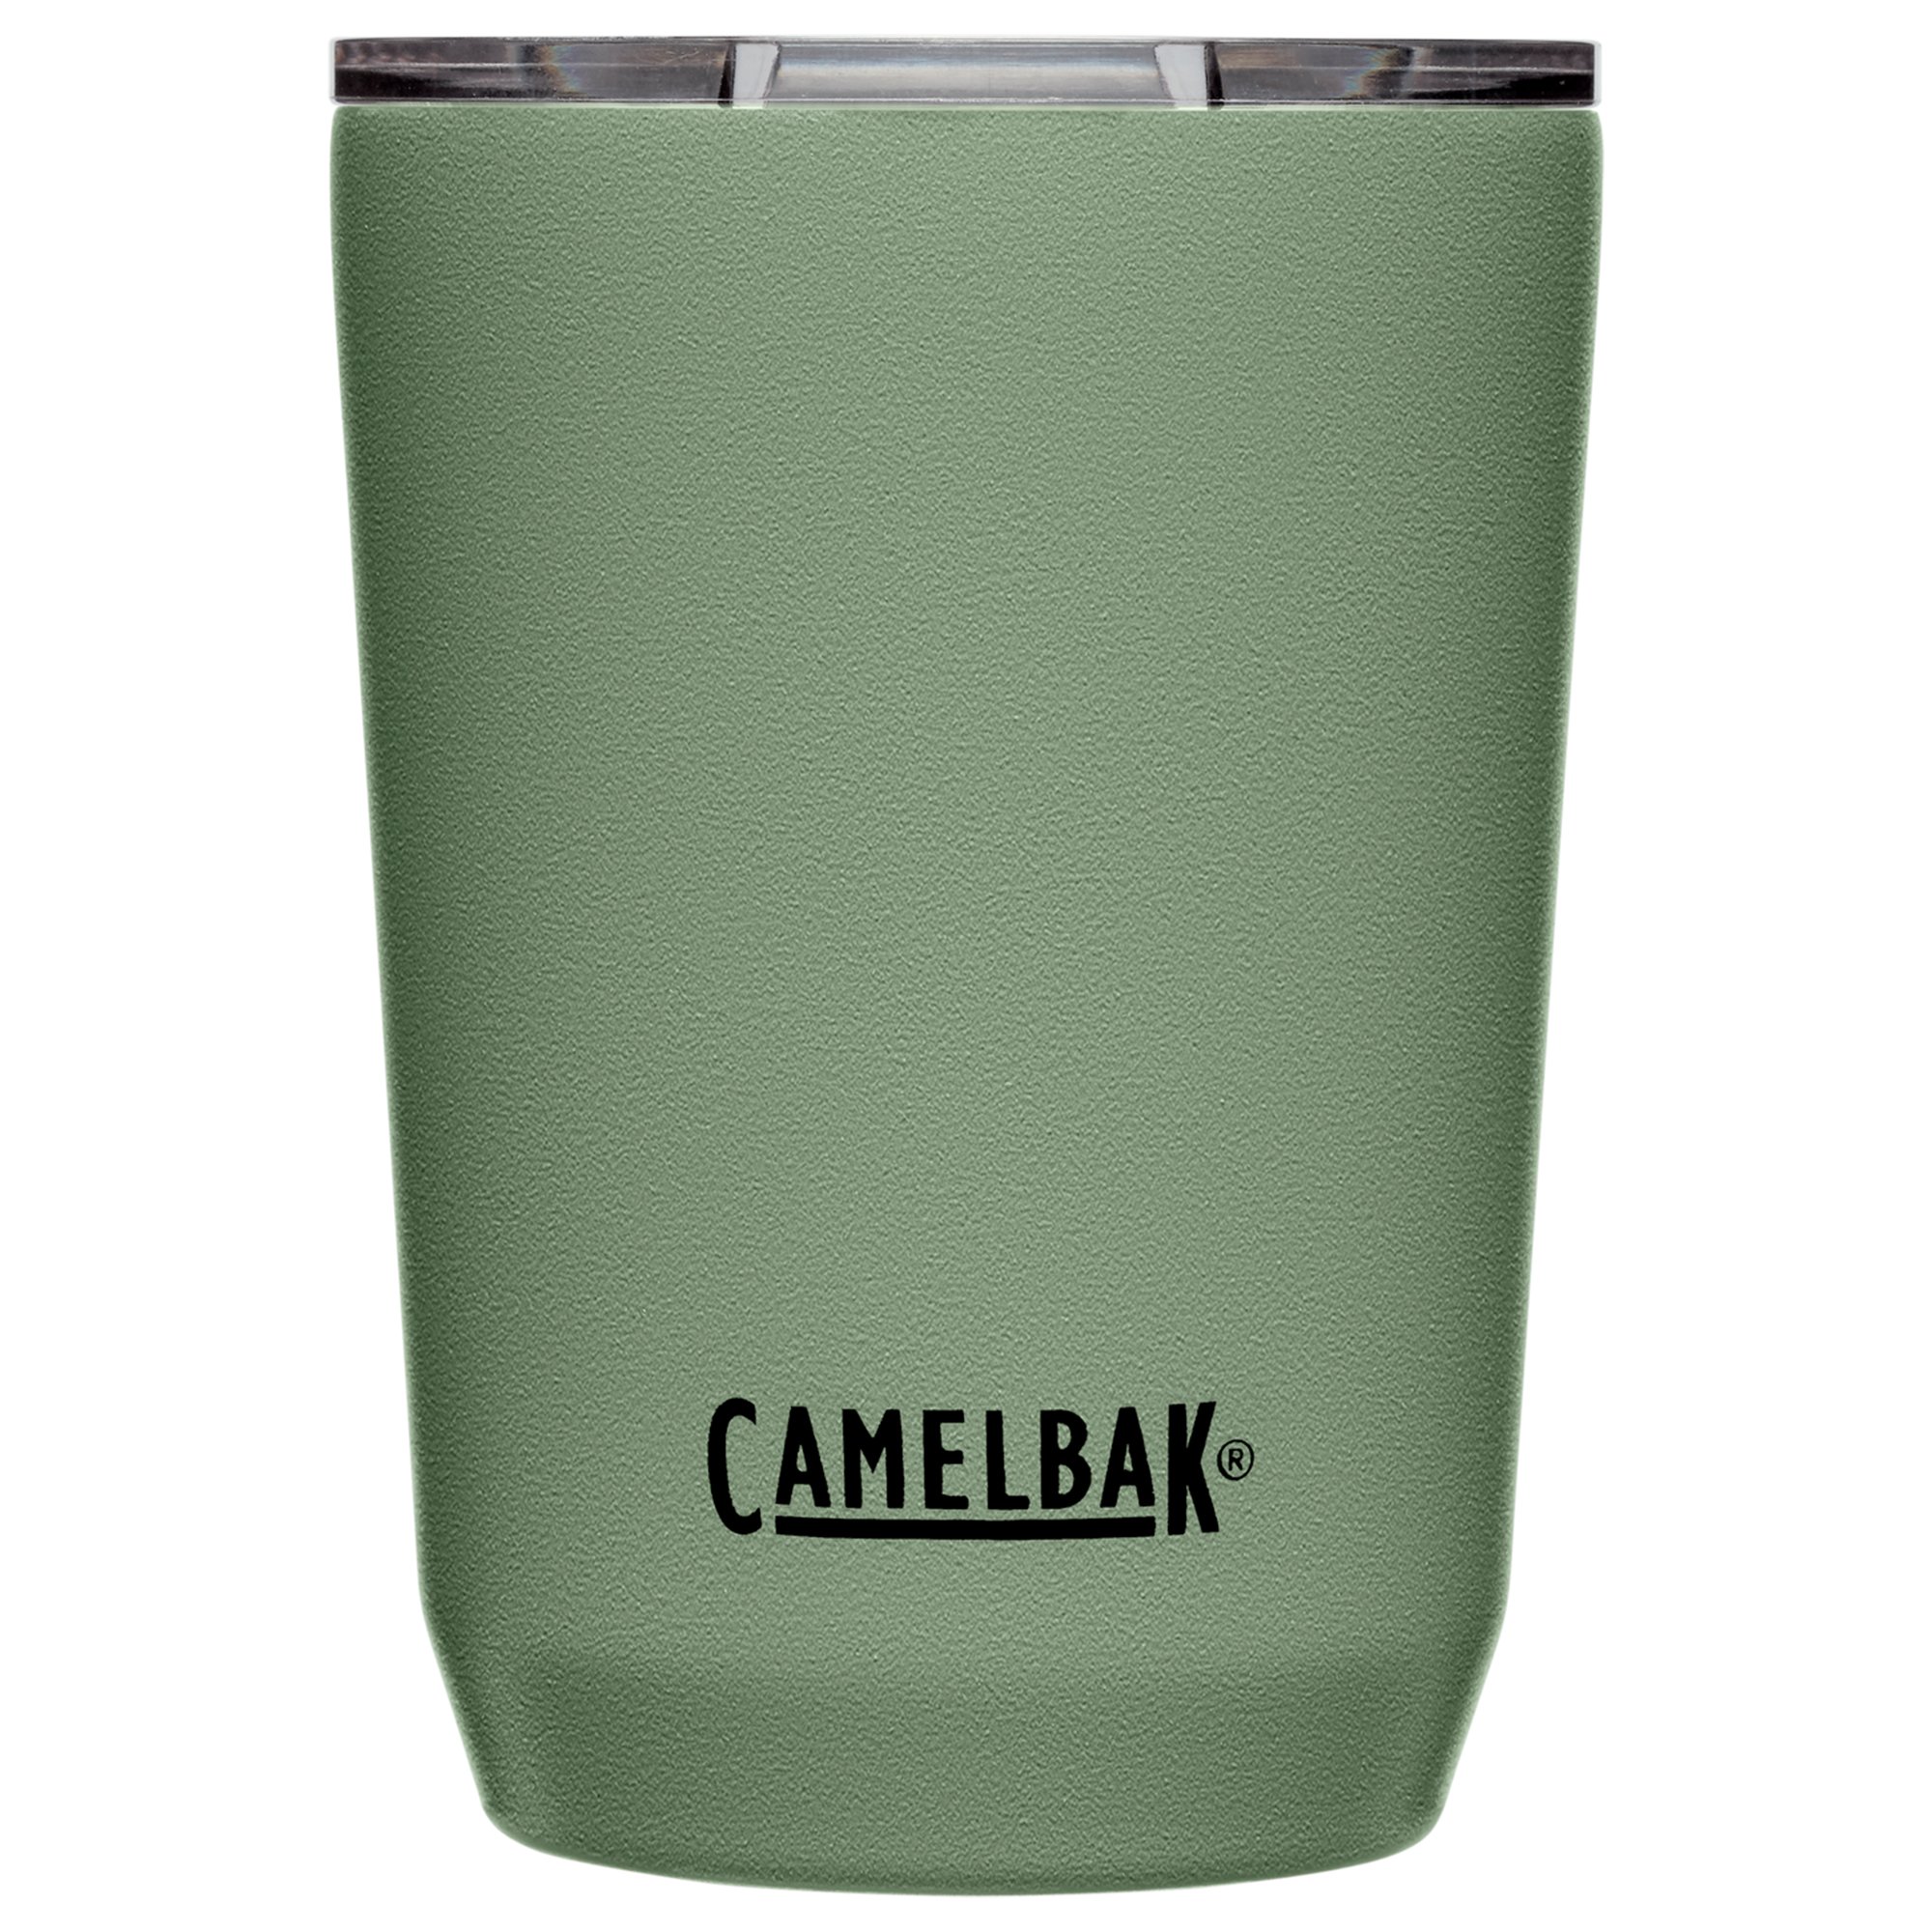 Camelbak Tumbler termokrus 0.35 liter, moss